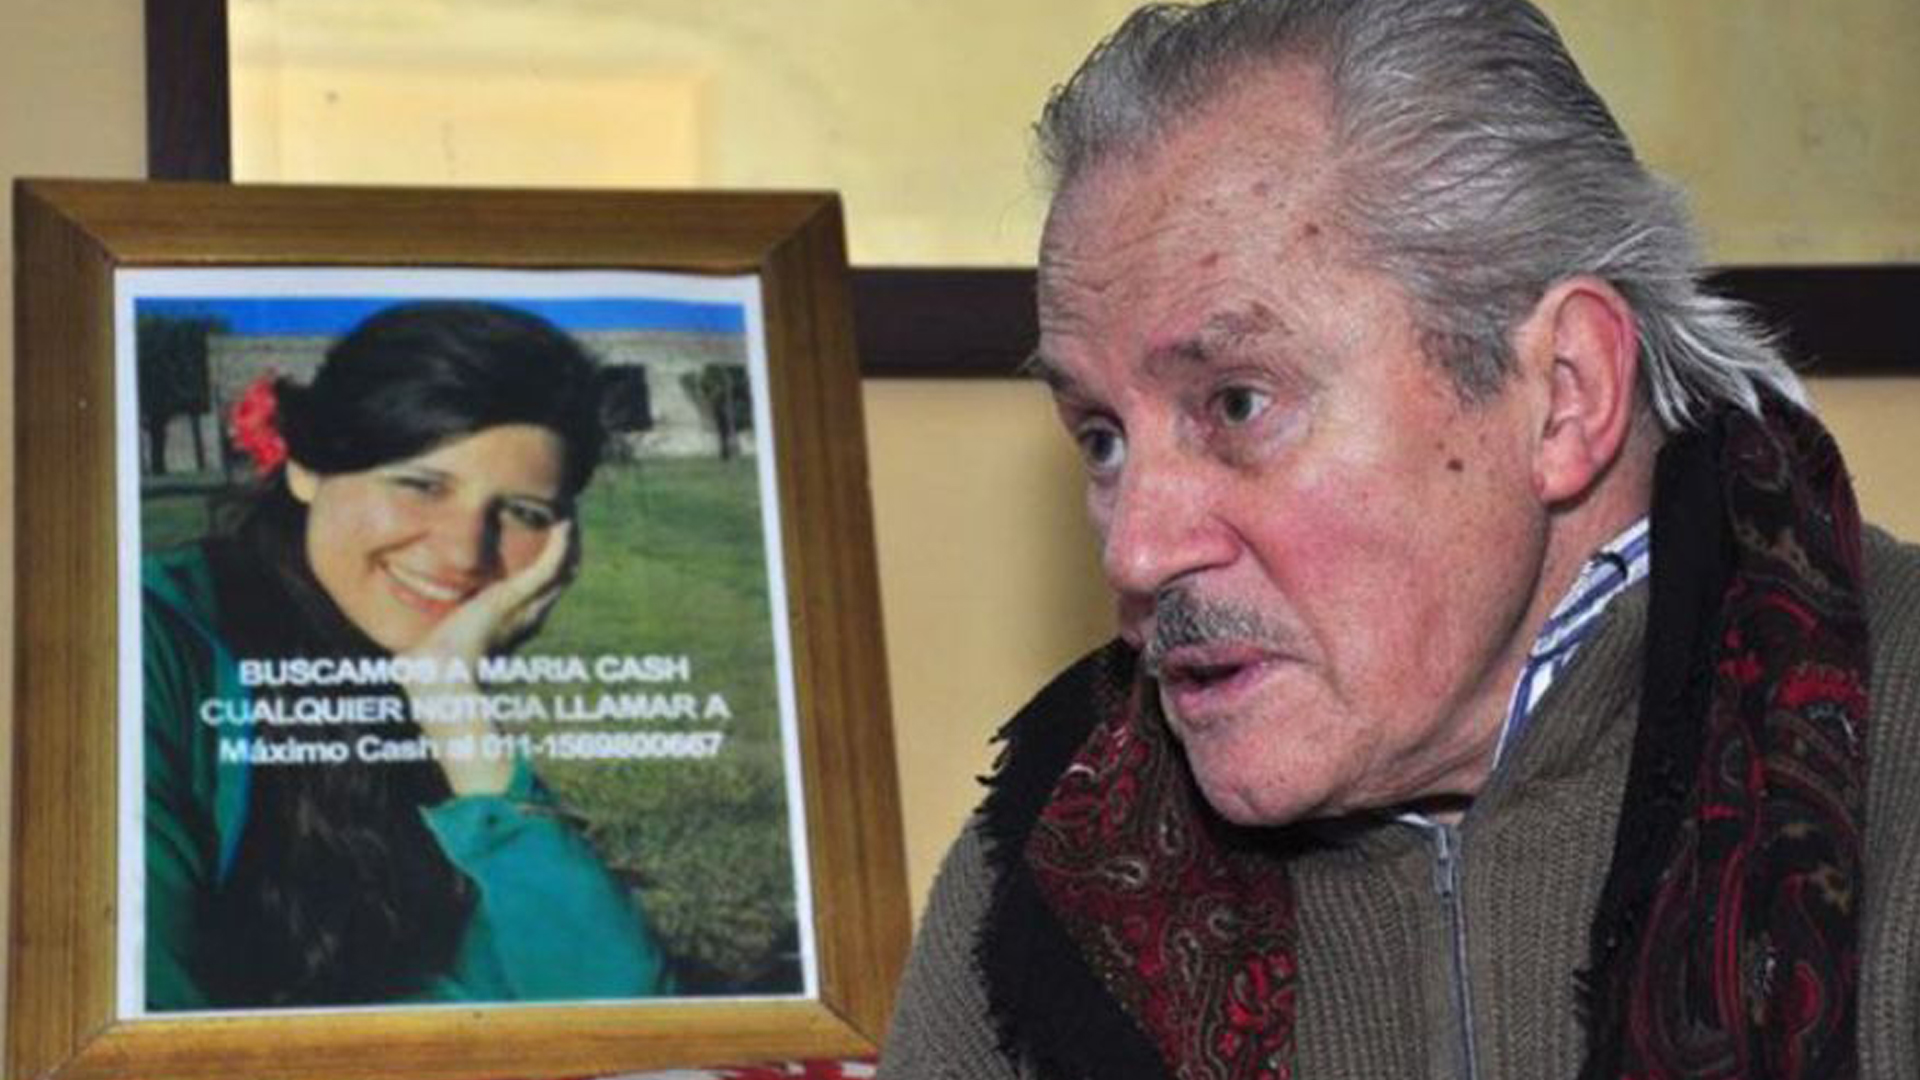 El 29 de abril de 2014, Federico Cash, el padre de la joven, falleció en un accidente automovilístico en La Pampa, siguiendo una pista sobre su hija (Archivo DEF)